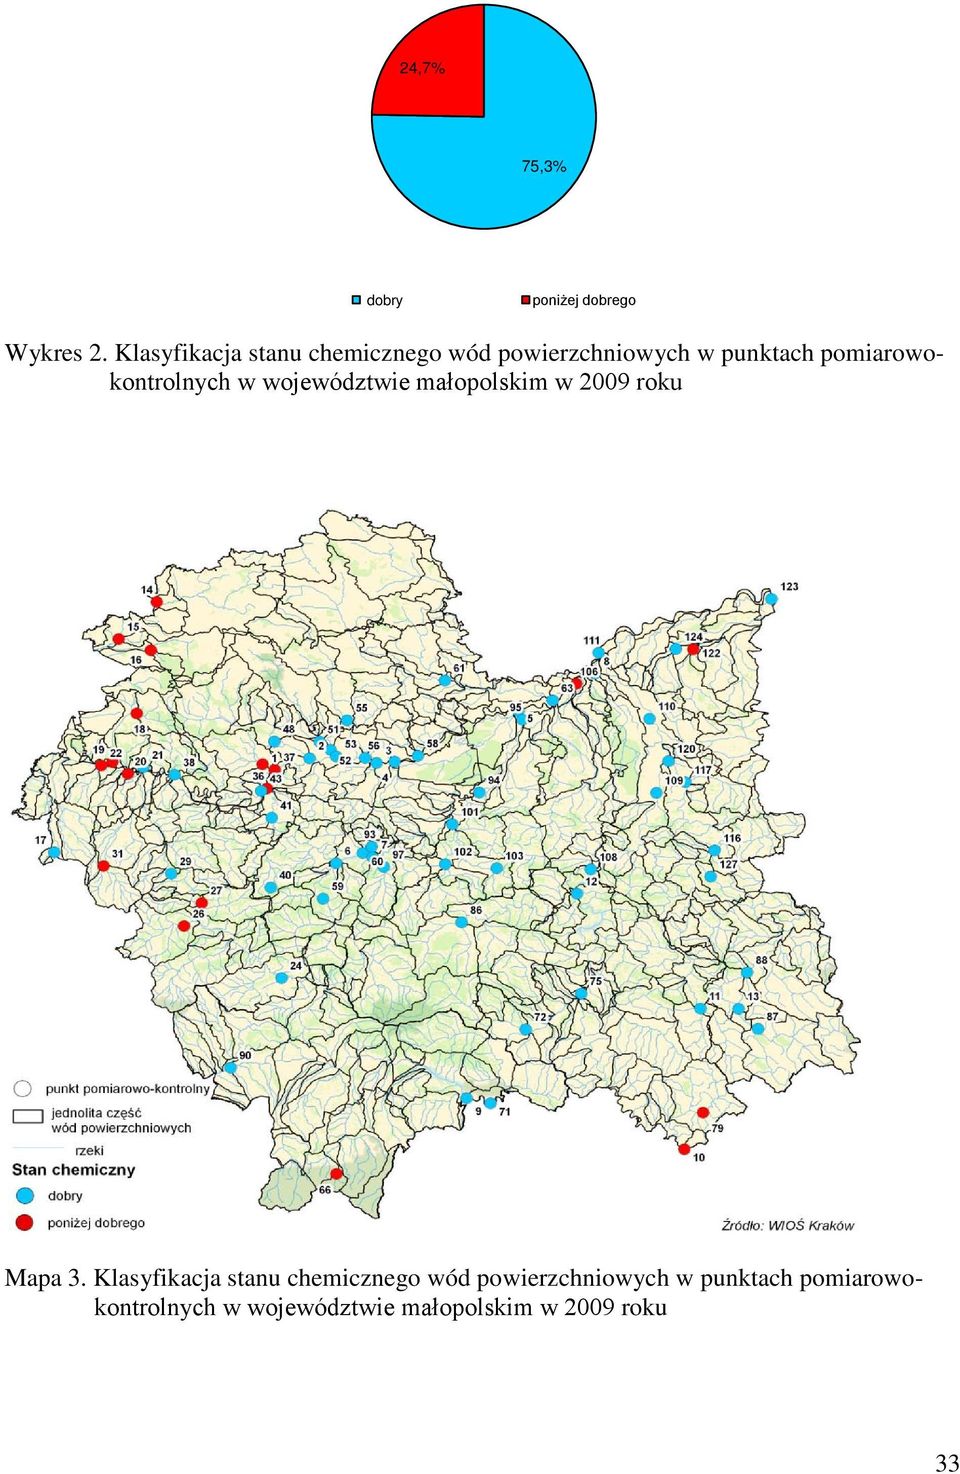 pomiarowokontrolnych w województwie małopolskim w 2009 roku Mapa 3.